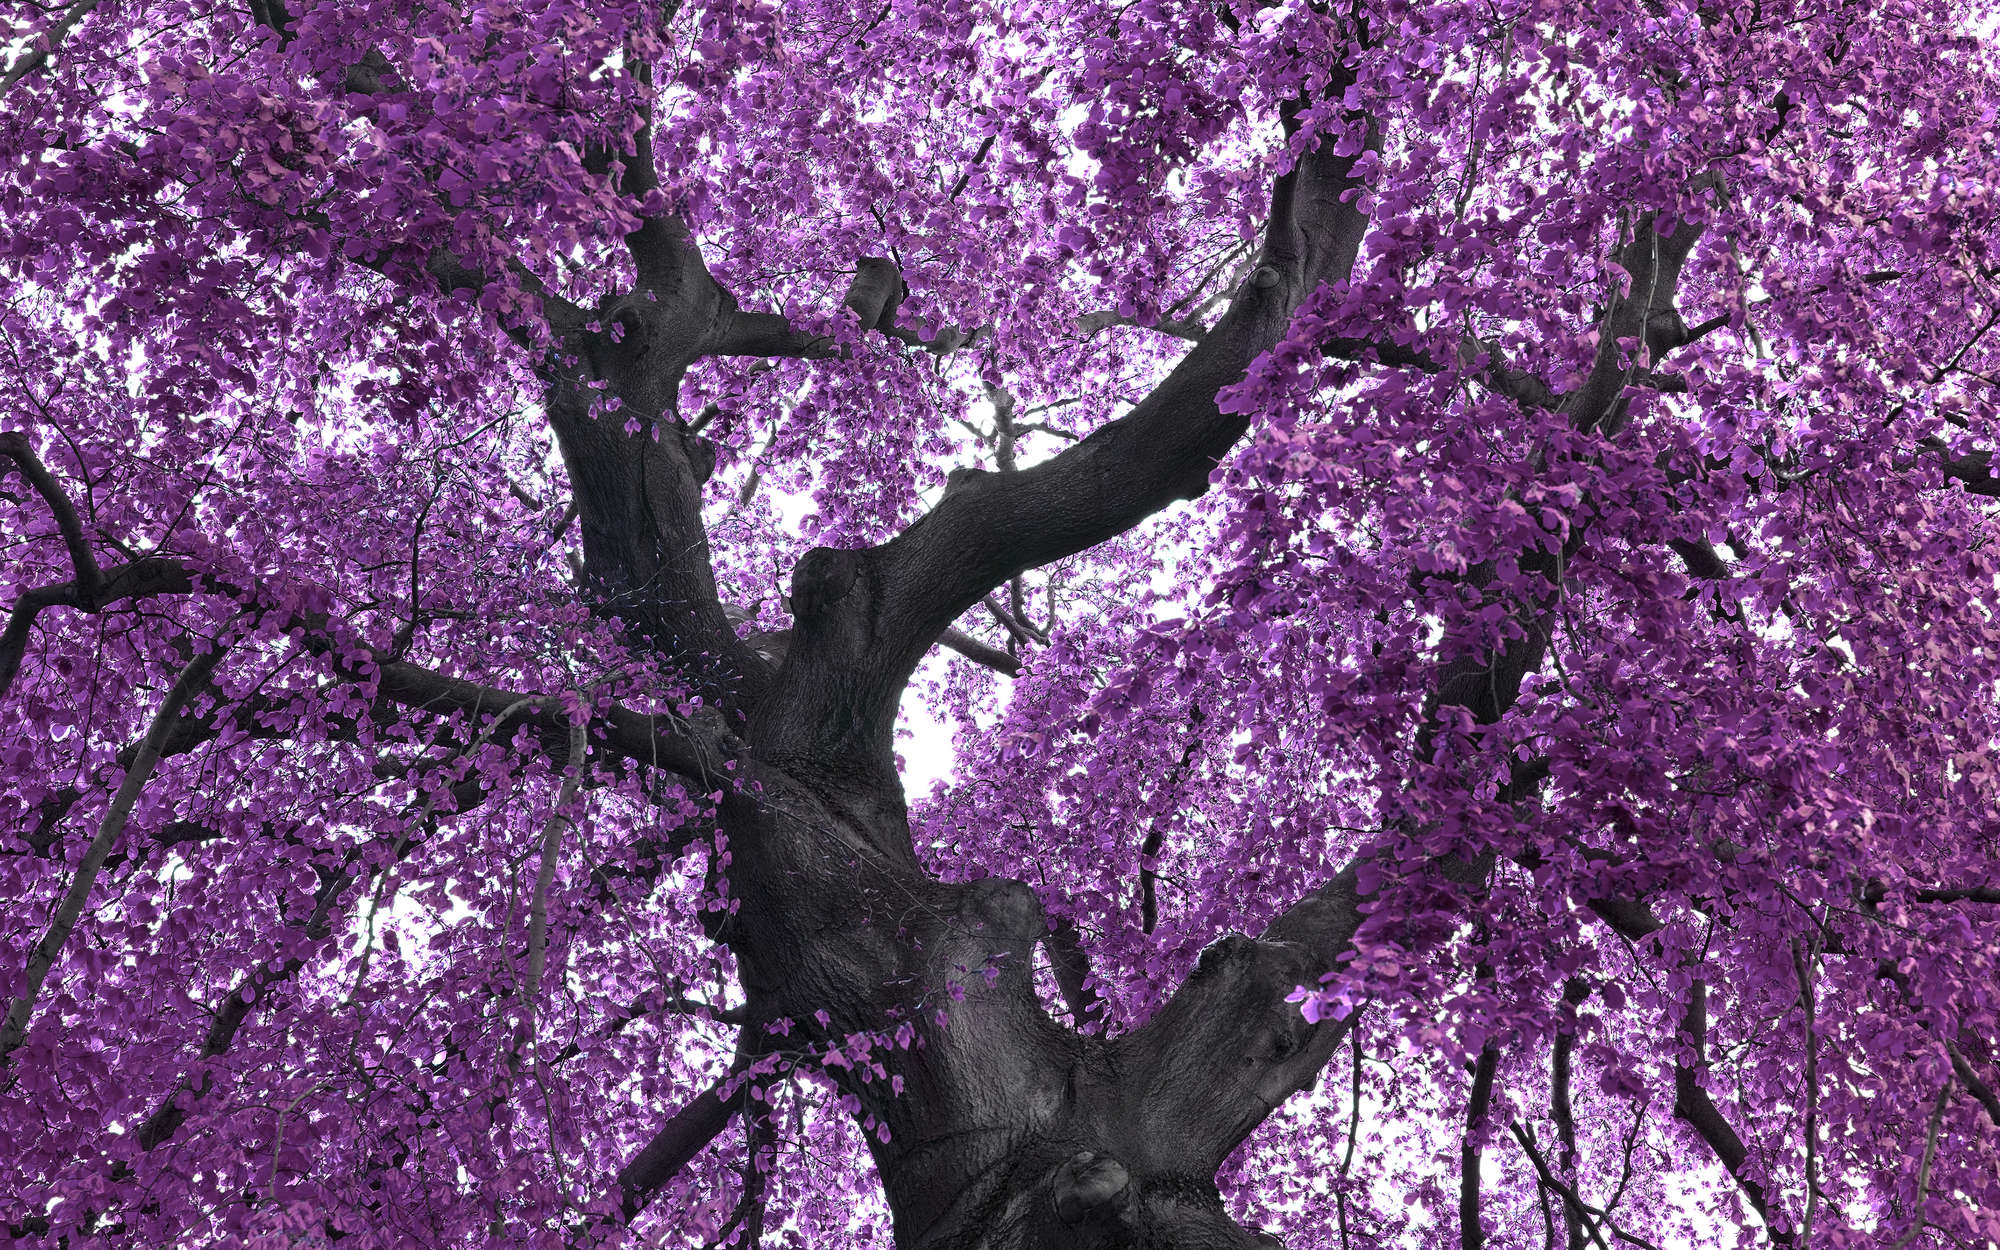             Digital behang boom met paarse boomtop - parelmoer glad vlies
        